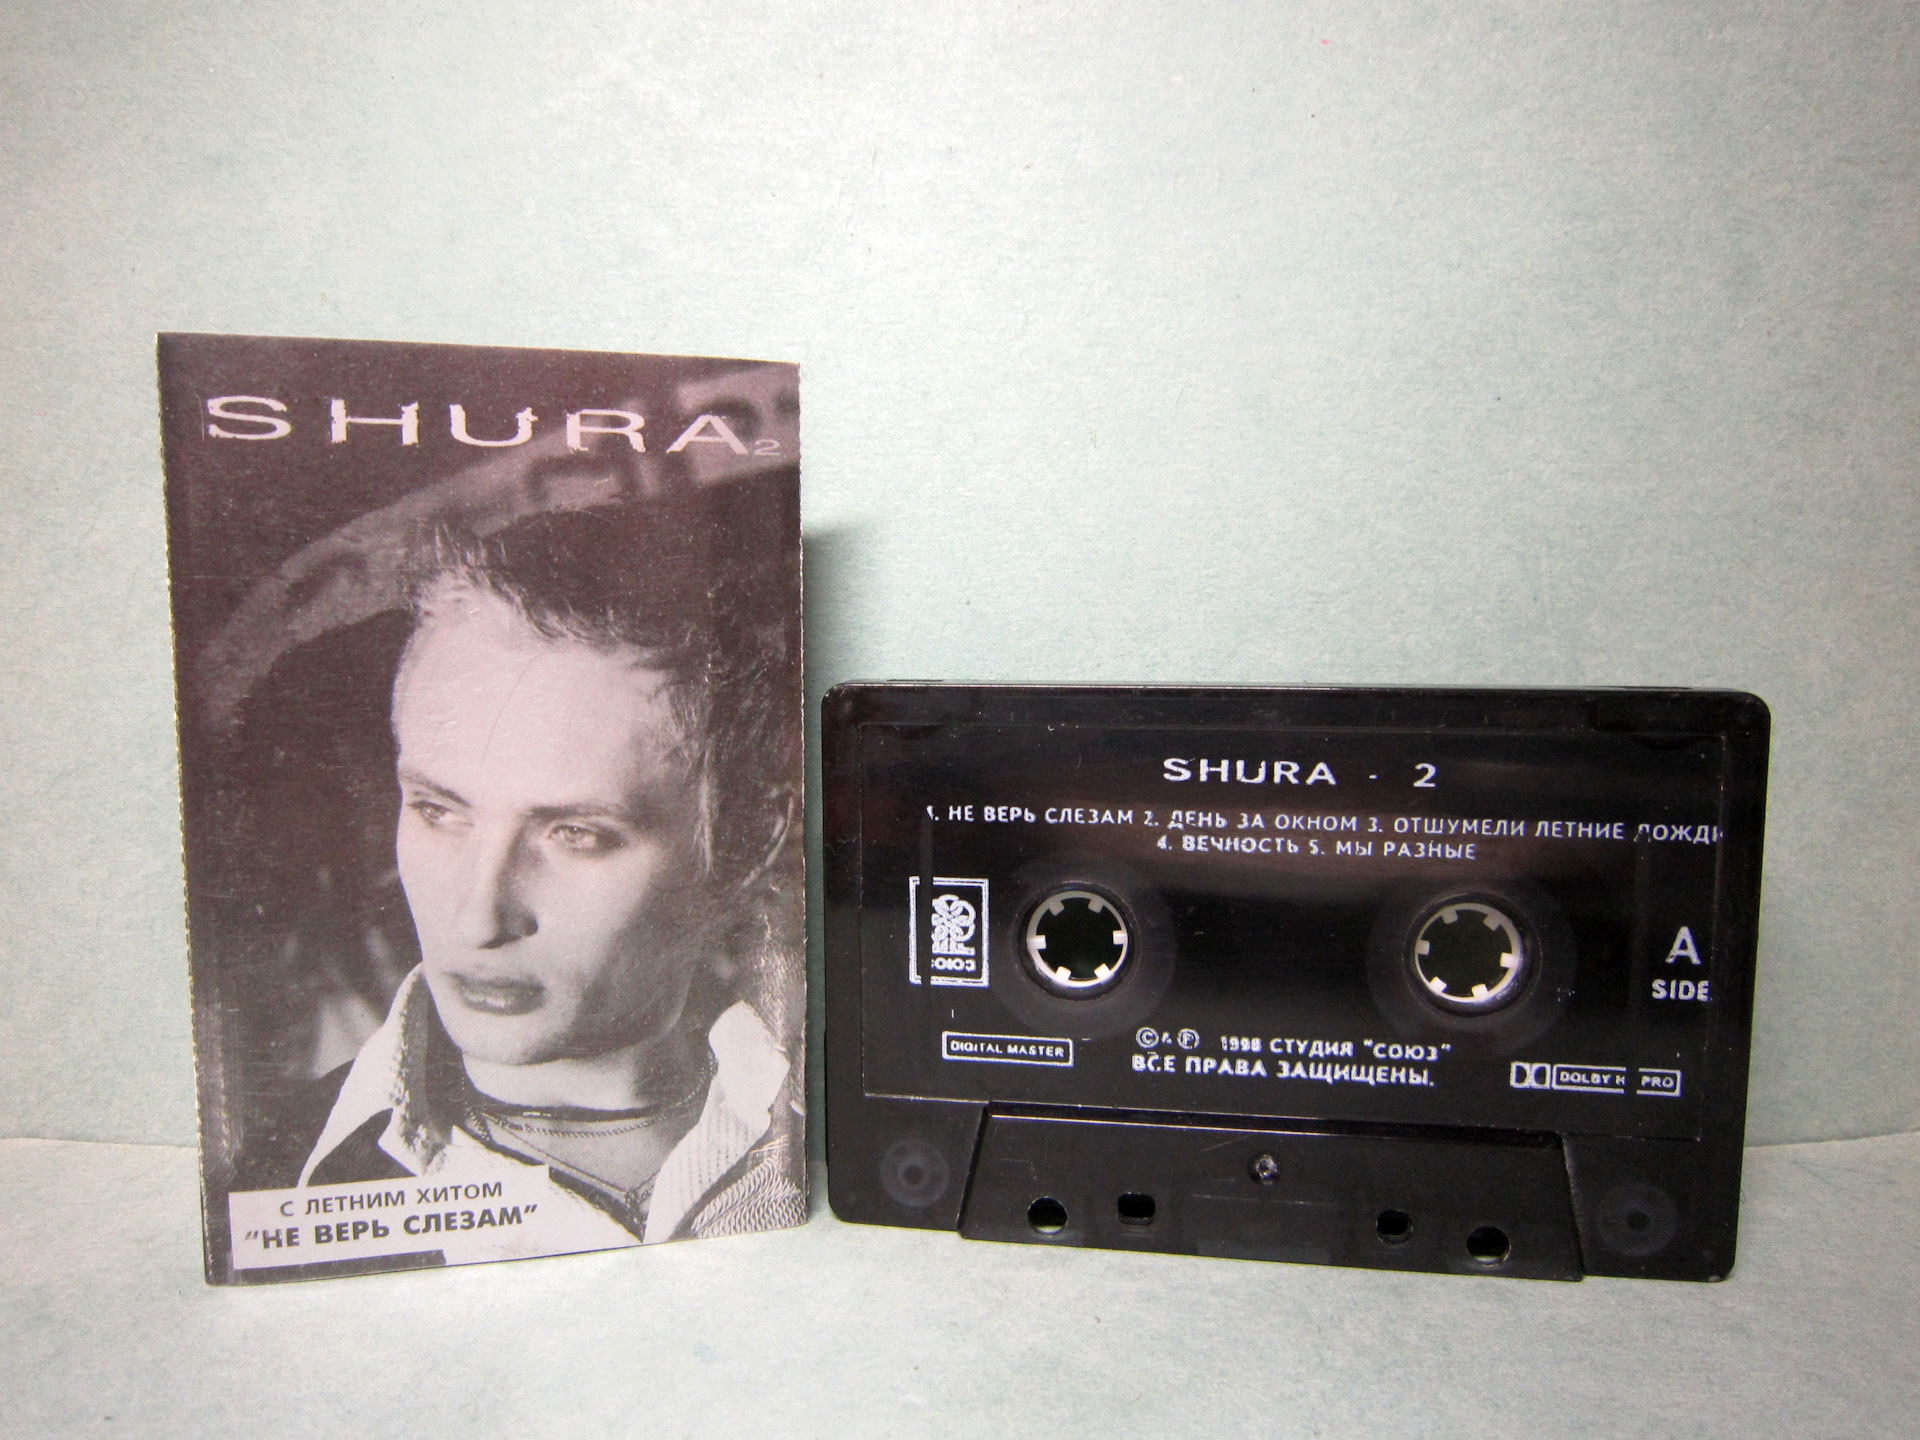 Не верь слезам прокурора. Shura 2 Шура кассета. Аудиокассеты Шура. Обложка аудиокассеты Шура. Первая кассета Шуры.